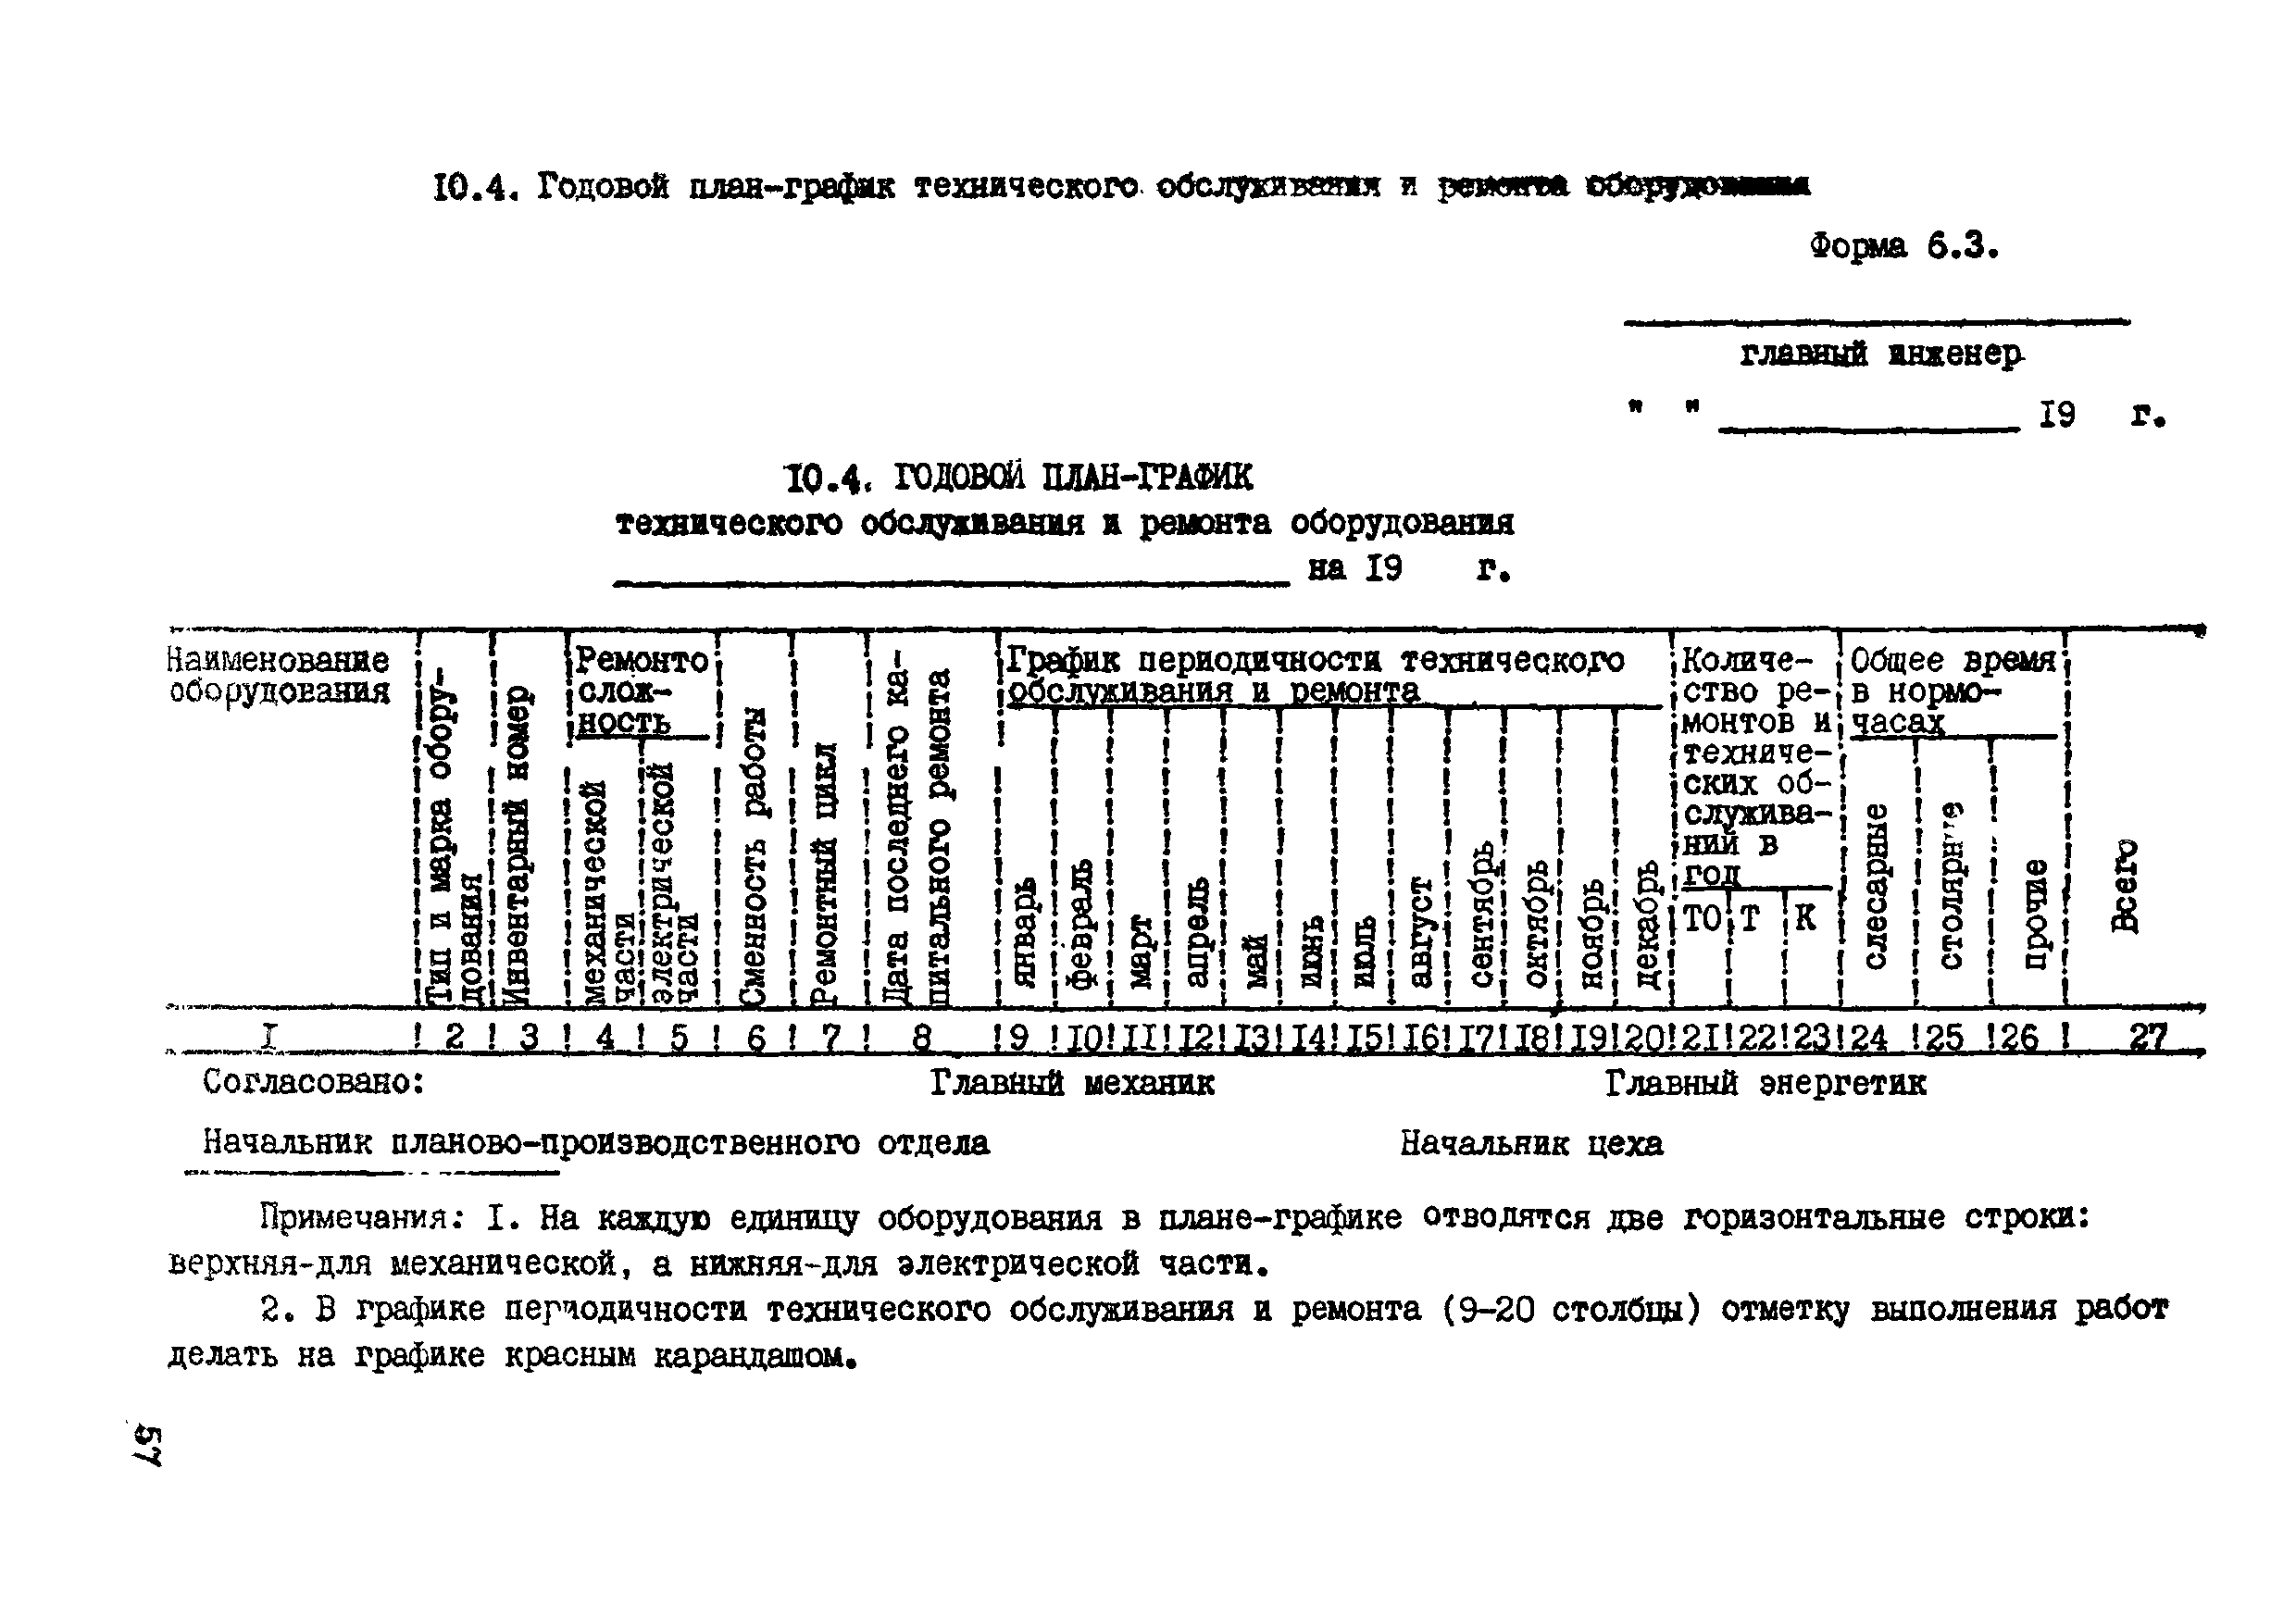 ВСН 39-87